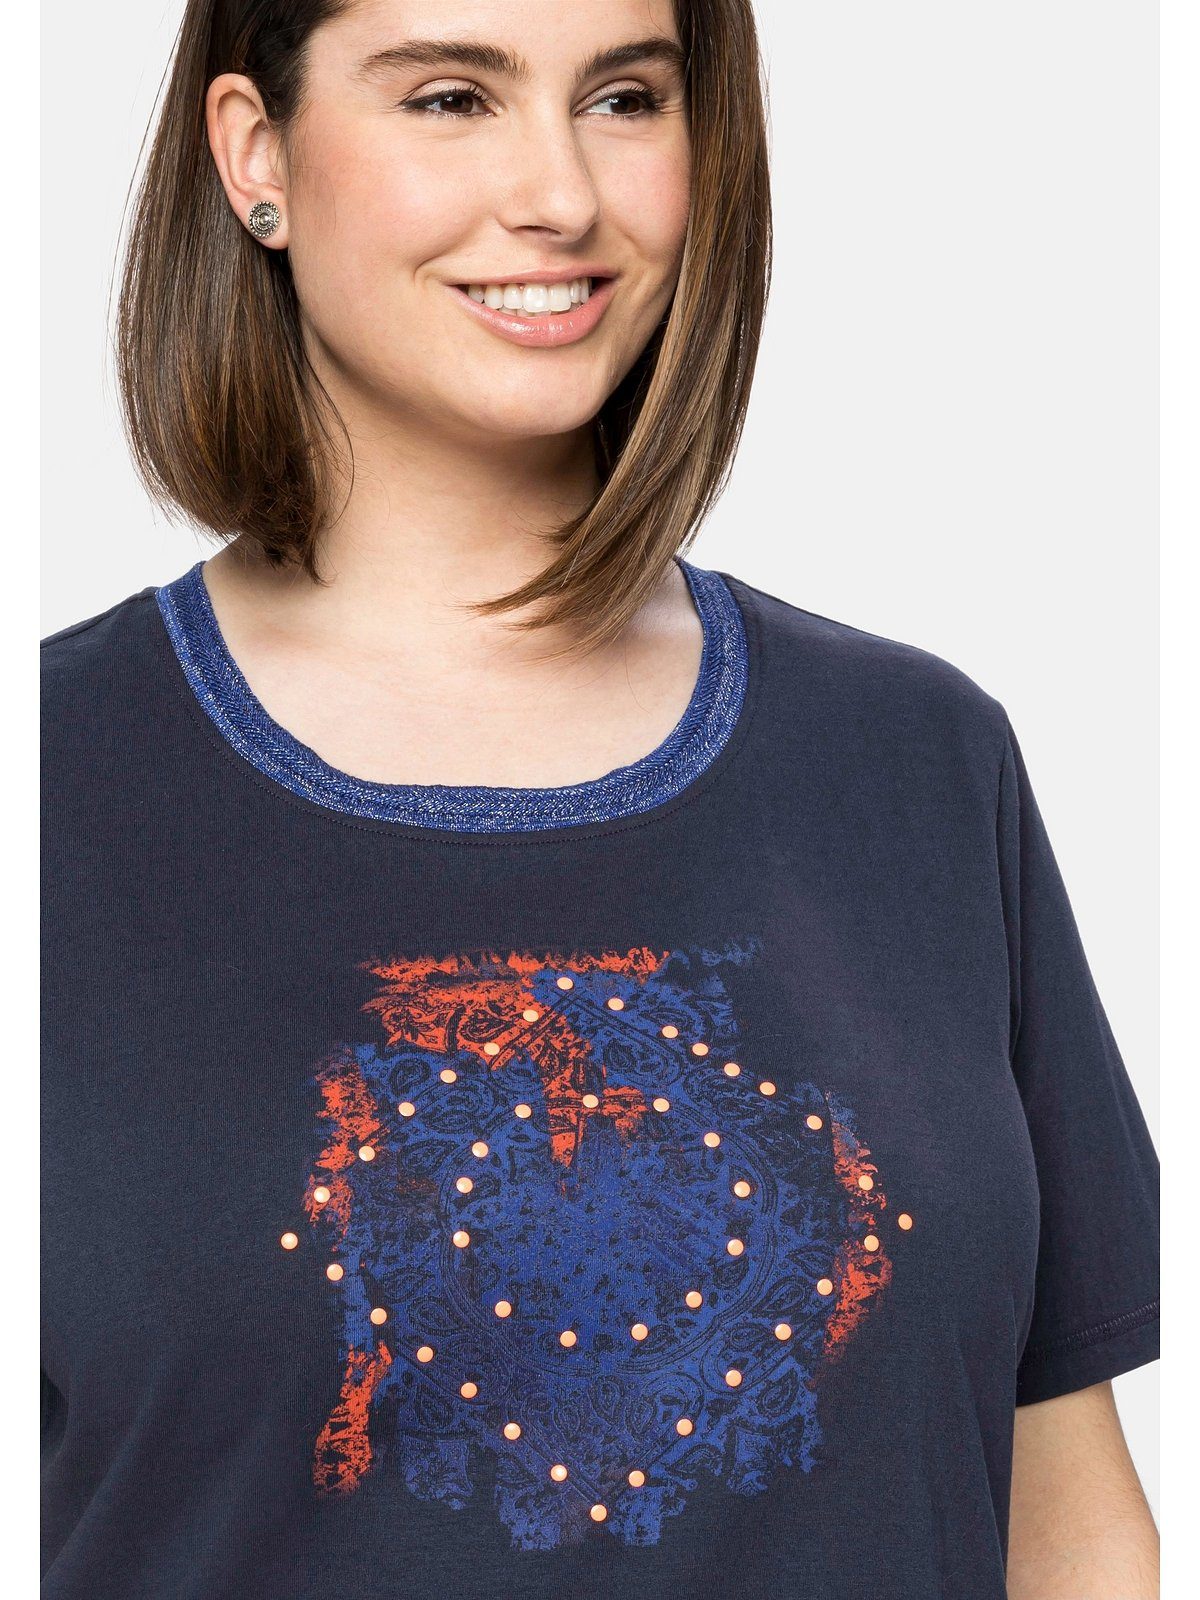 Größen Große Ausschnitt am T-Shirt Frontdruck und Effektgarn mit nachtblau modischem Sheego